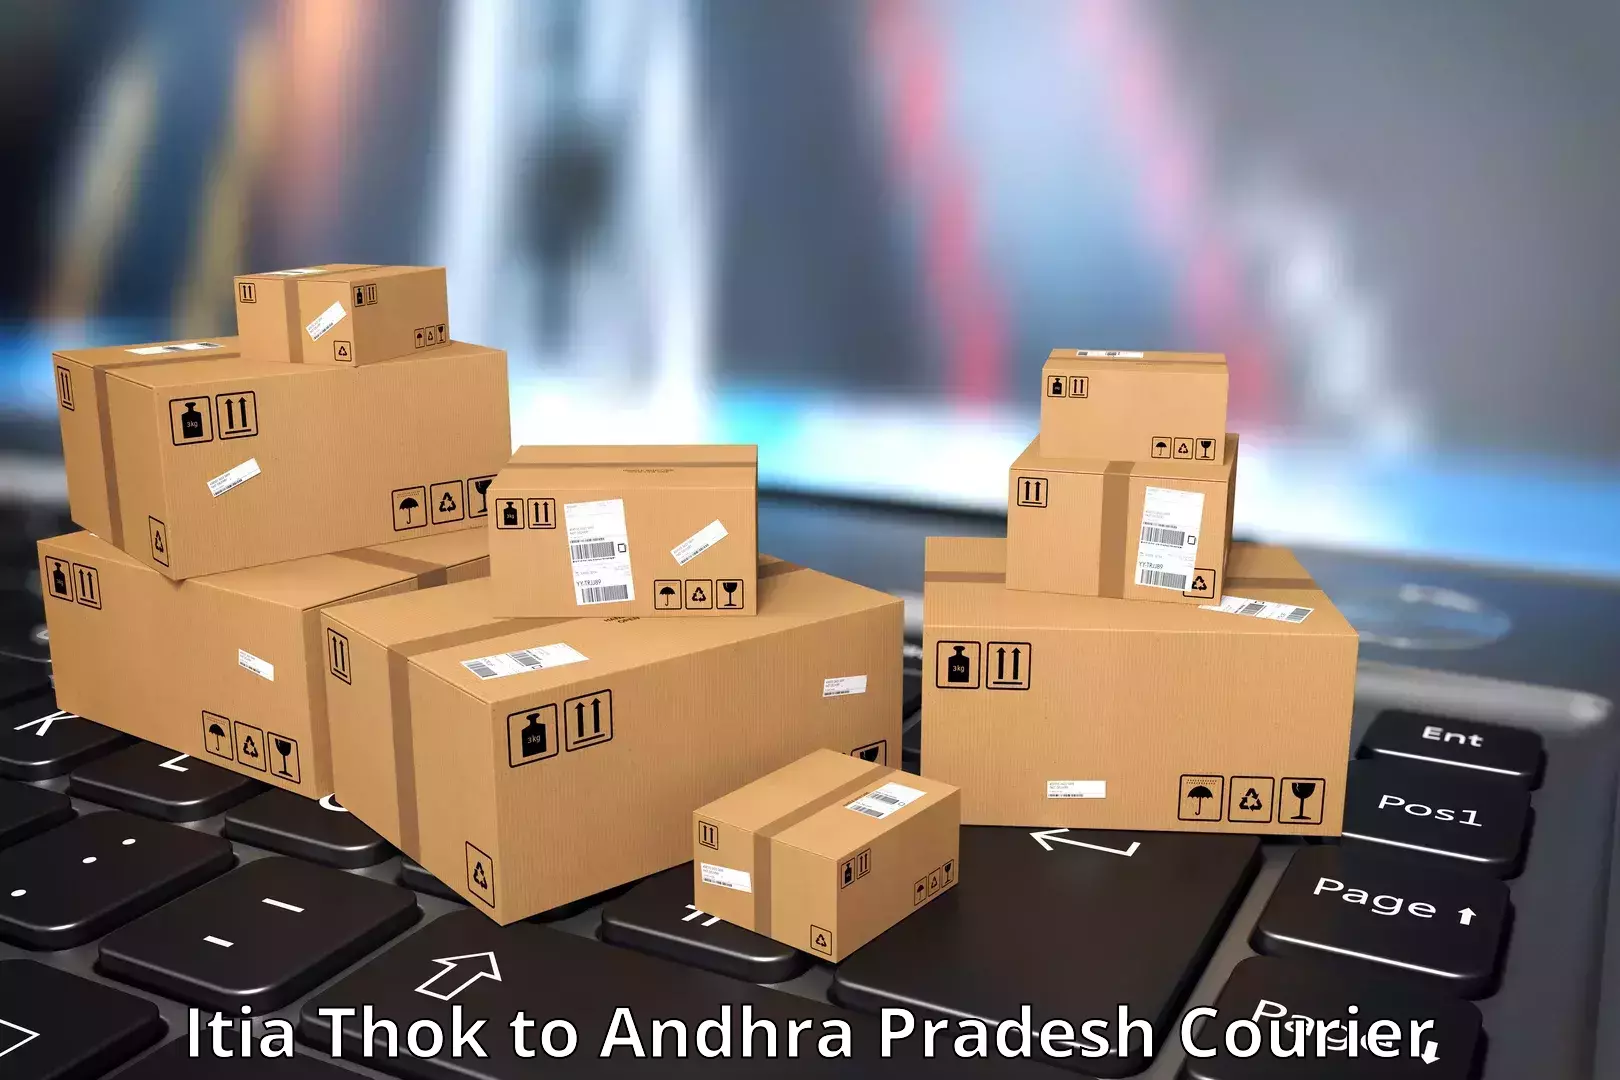 User-friendly courier app Itia Thok to Andhra Pradesh